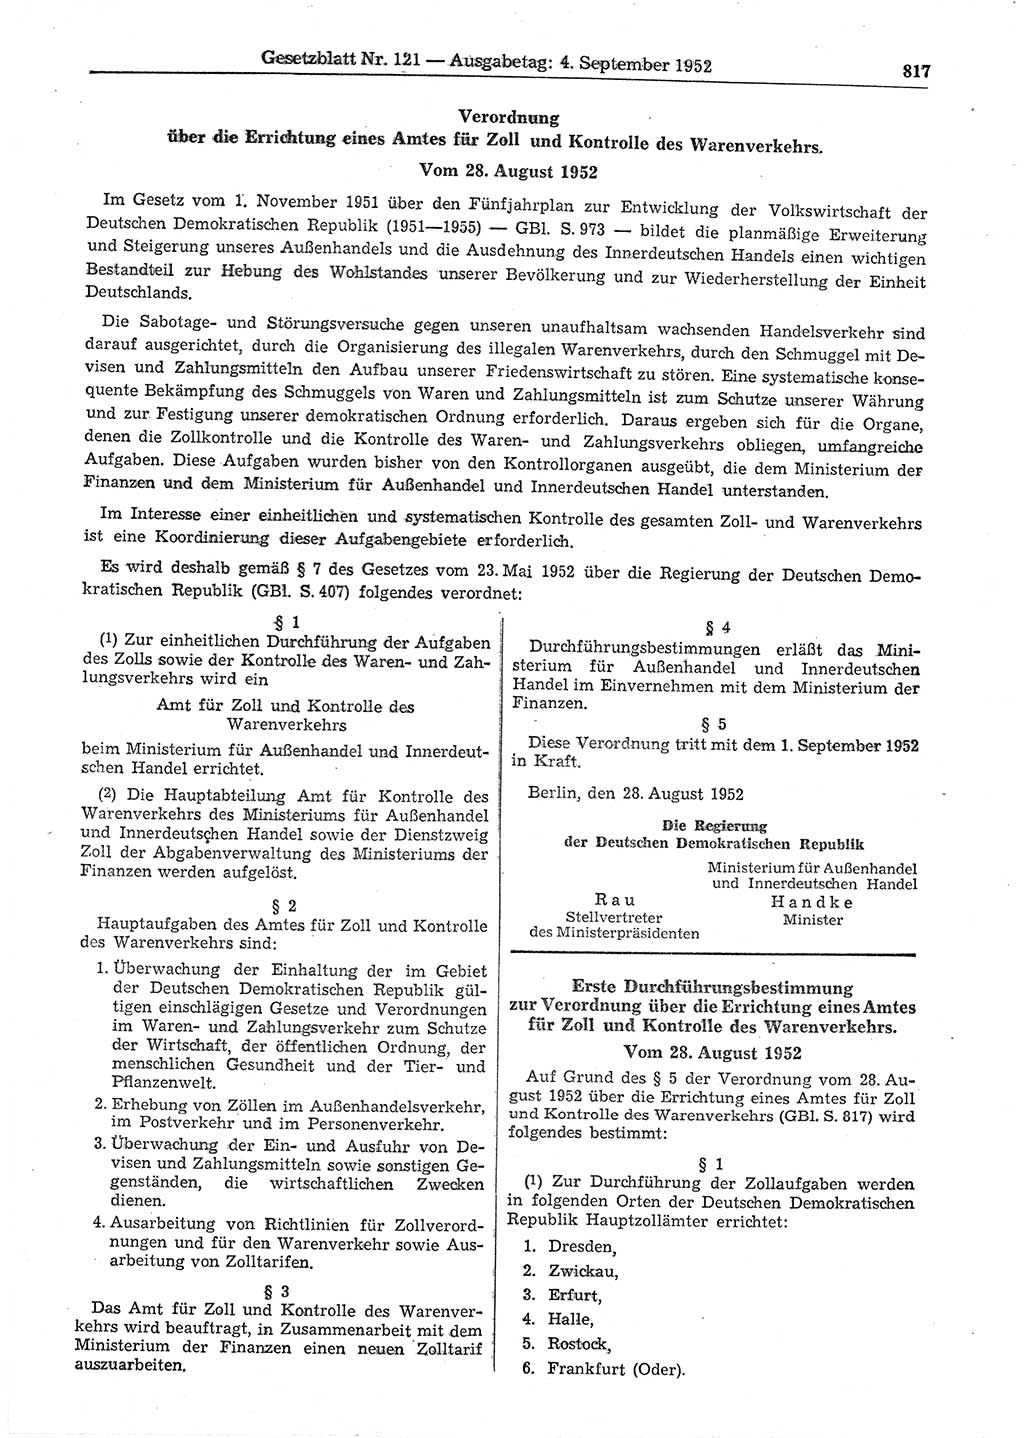 Gesetzblatt (GBl.) der Deutschen Demokratischen Republik (DDR) 1952, Seite 817 (GBl. DDR 1952, S. 817)